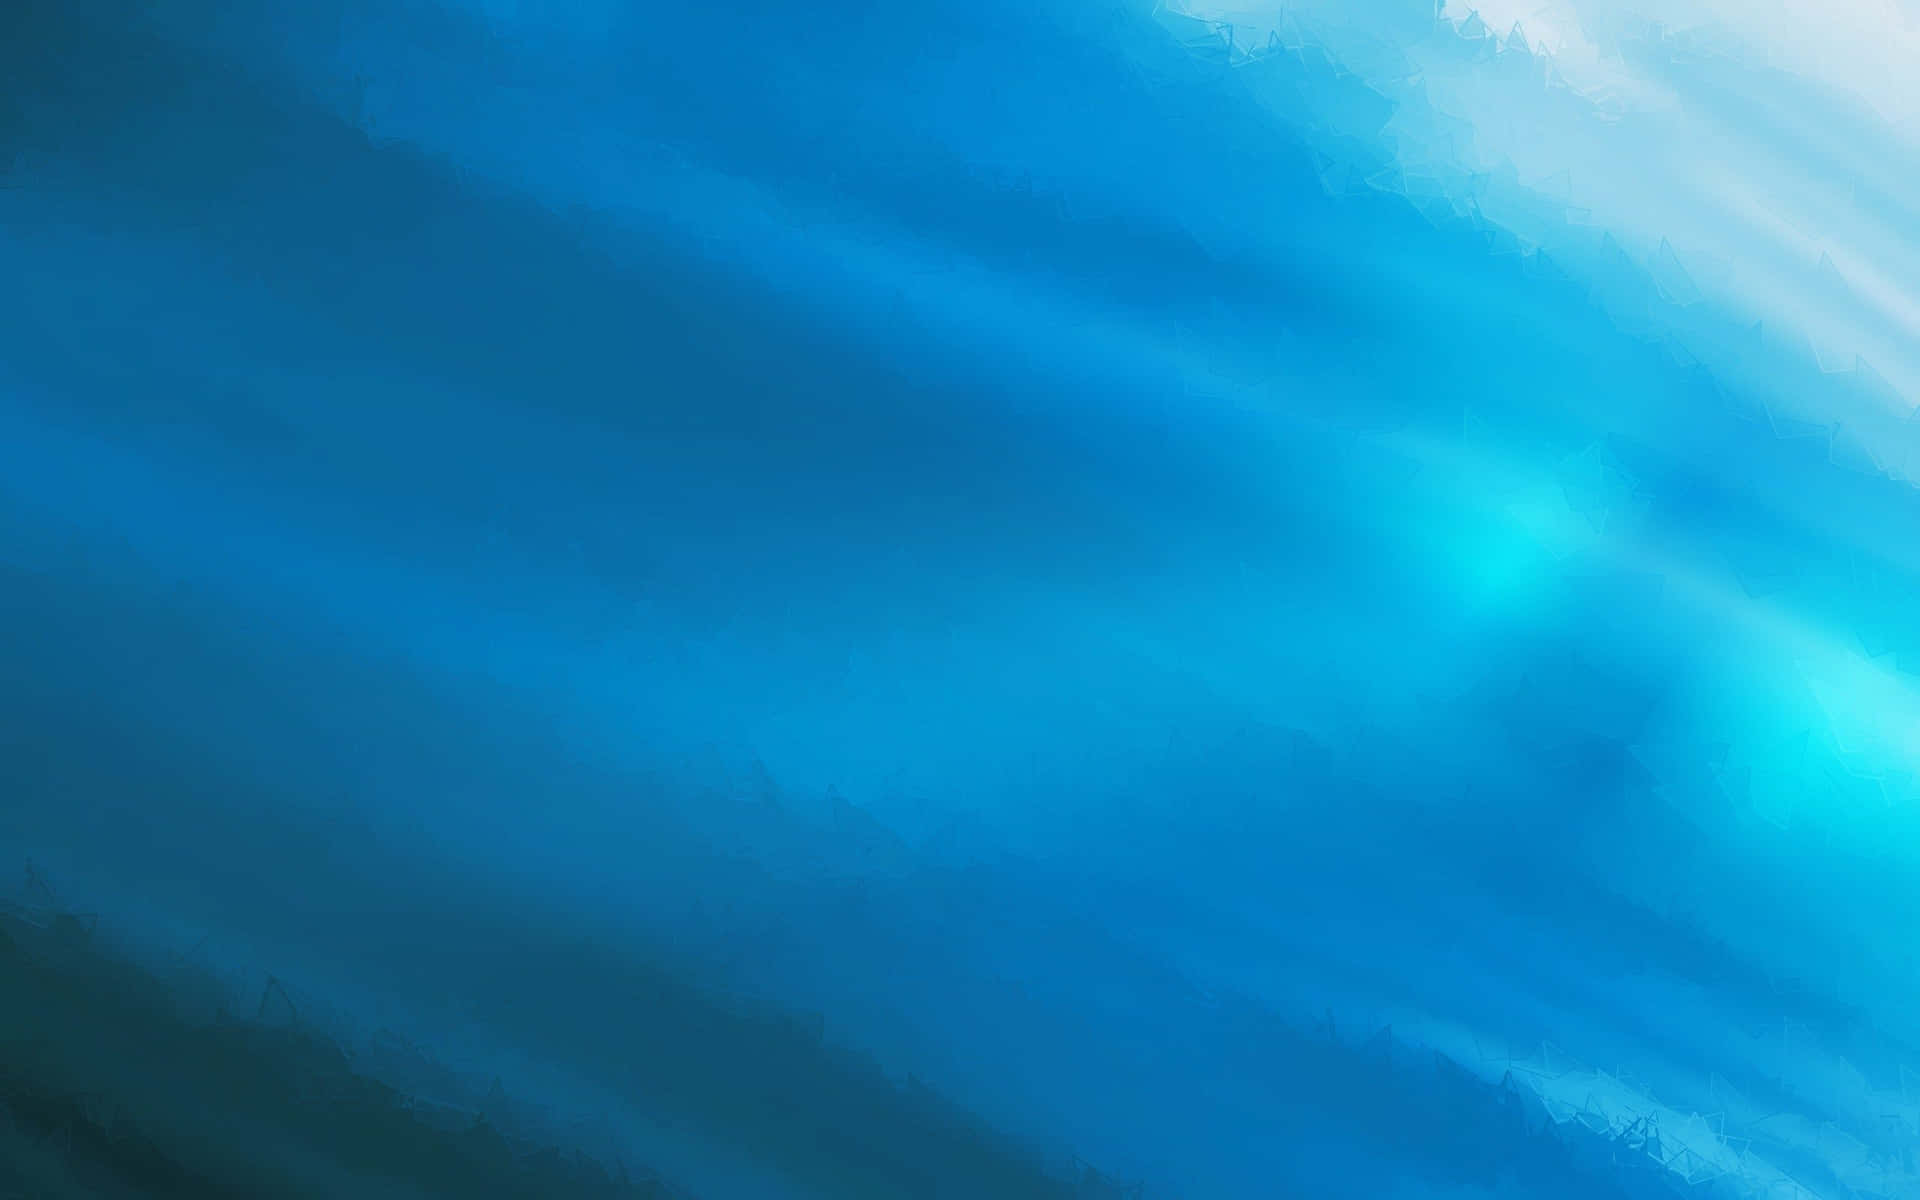 solid blue desktop background